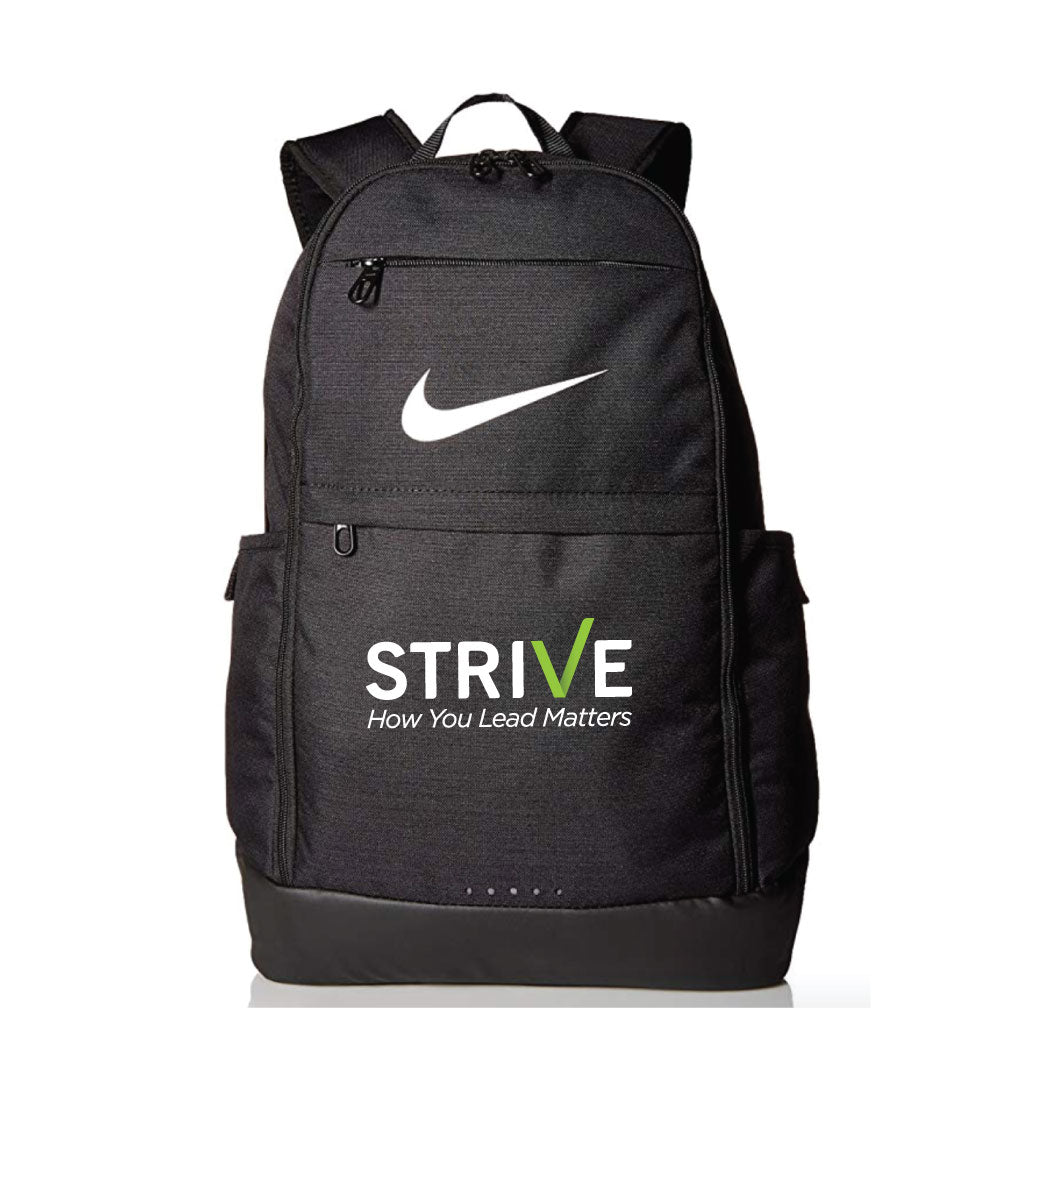 Strive Nike Backpack